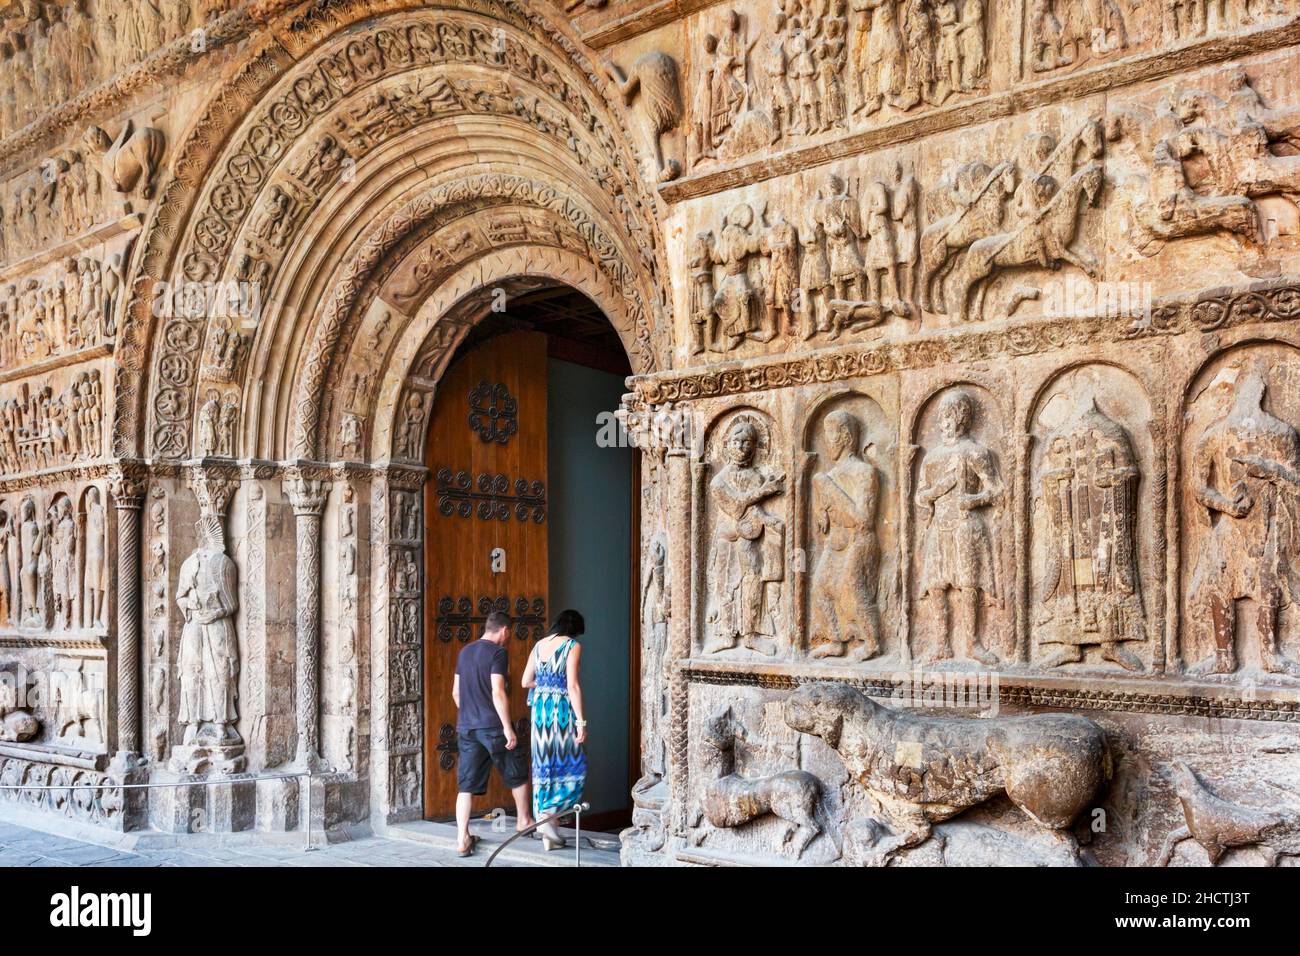 Ripoll, Provinz Girona, Katalonien, Spanien. Monastir, oder Kloster, de Santa Maria. Das katalanische romanische Portal aus der Mitte des 13th. Jahrhunderts wurde manchmal auch t genannt Stockfoto